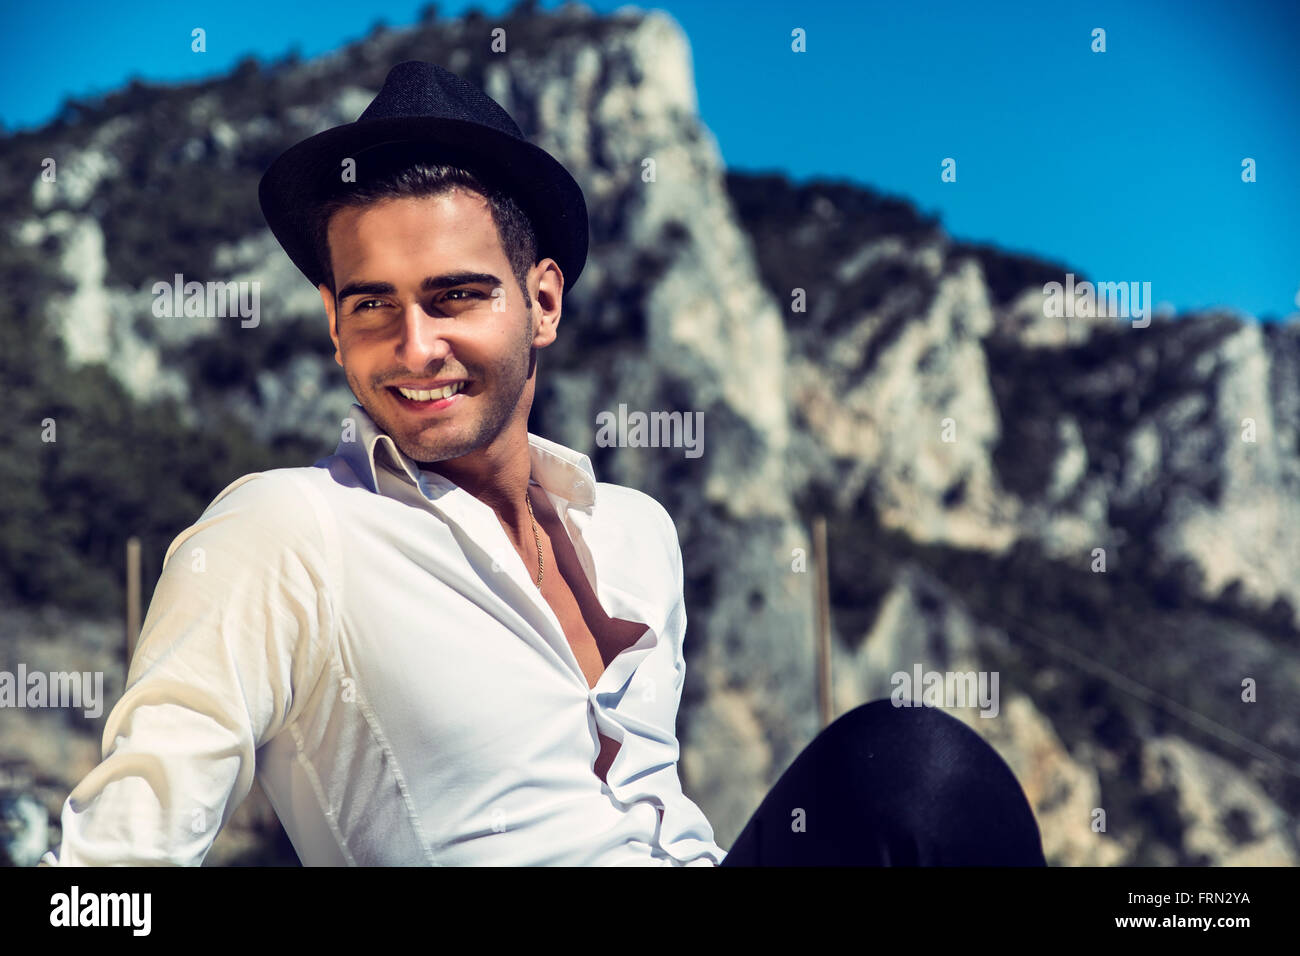 Schönen jungen Mann in elegantes weißes Hemd und schwarzen Filzhut, am Strand während aussehende lächelnd Weg. Hügel im Hintergrund Stockfoto